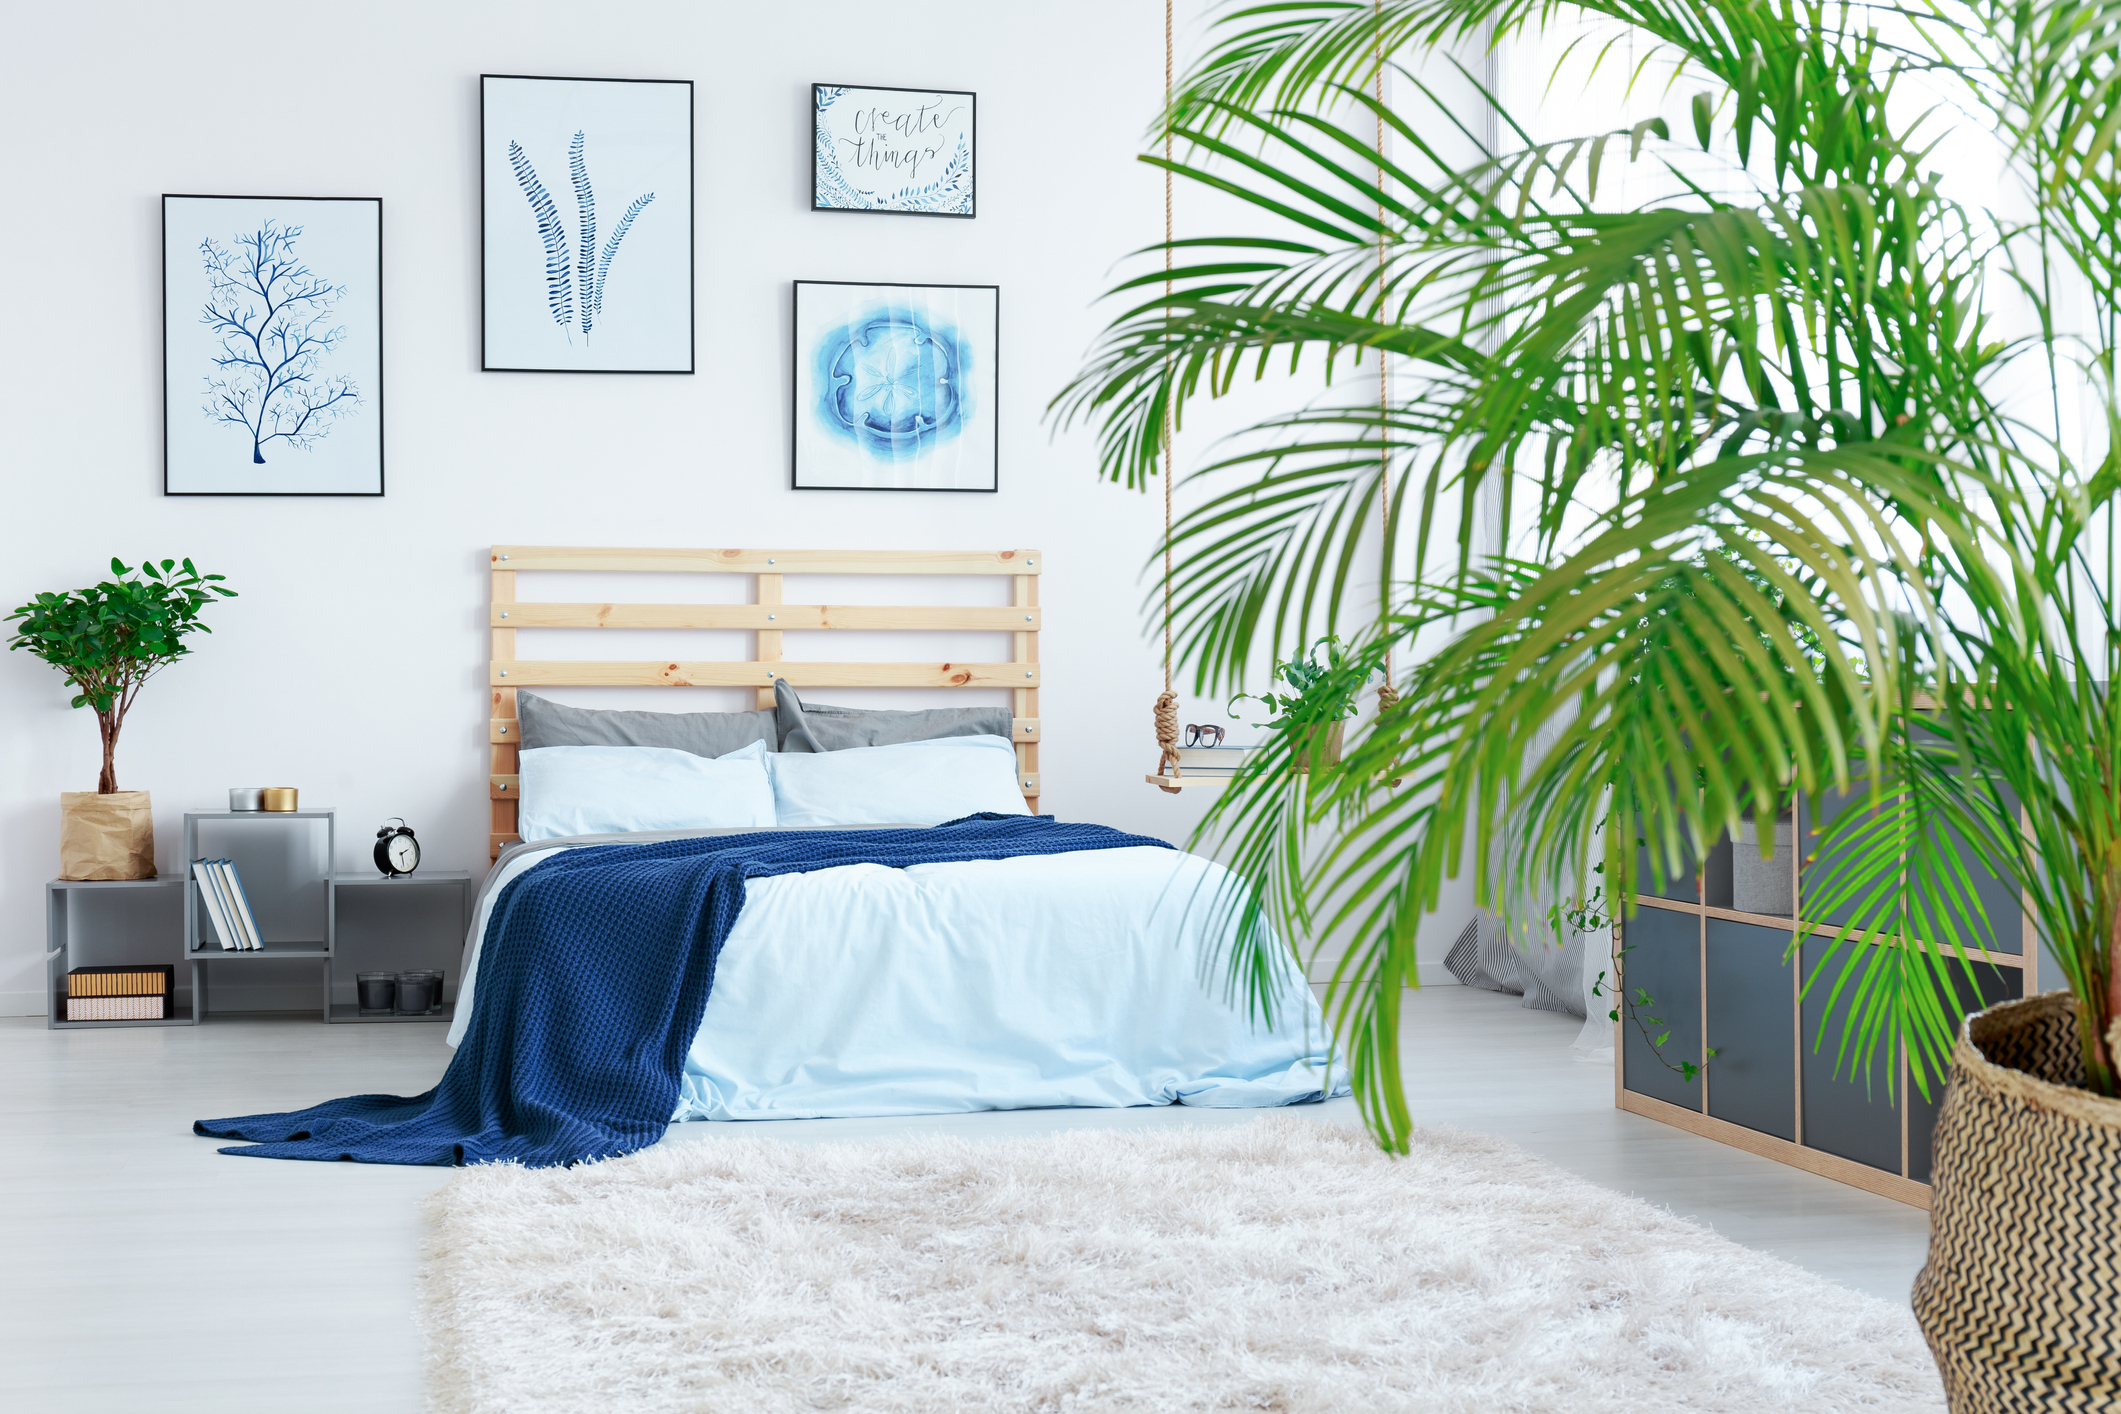 Imagem de um quarto despojado com plantas, detalhes em azul e cabeceira em pallet.